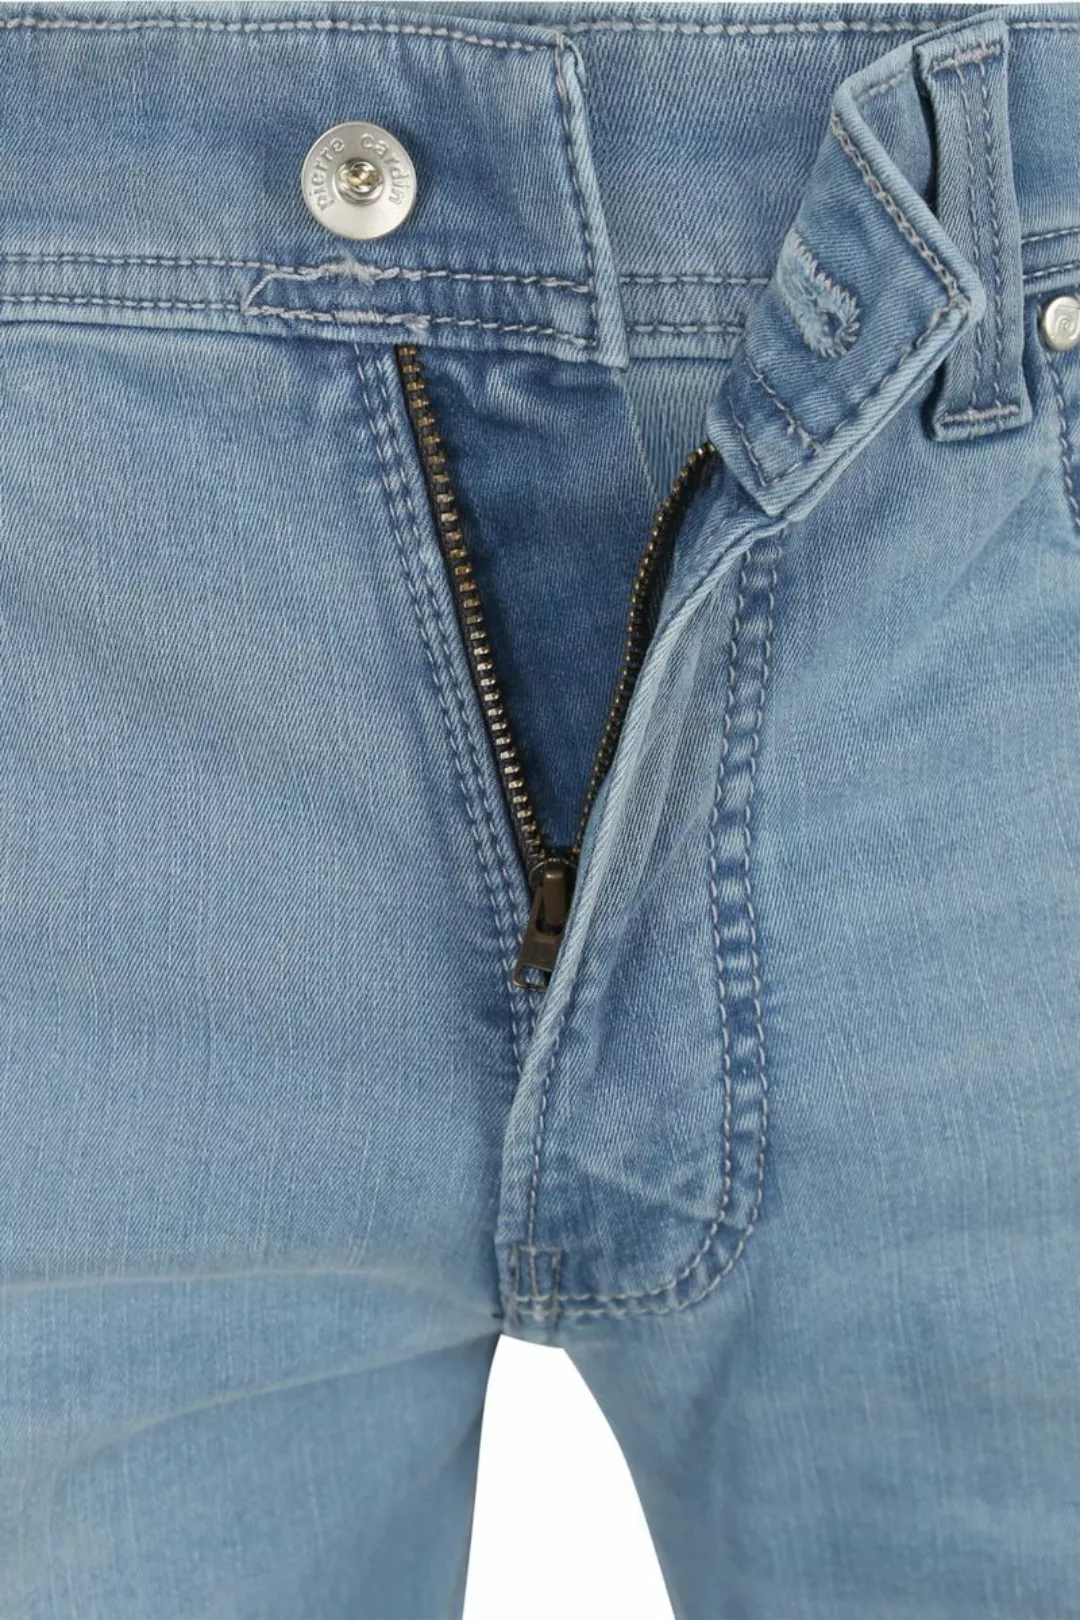 Pierre Cardin Jeans Lyon Tapered Future Flex Hellblau  - Größe W 38 - L 32 günstig online kaufen